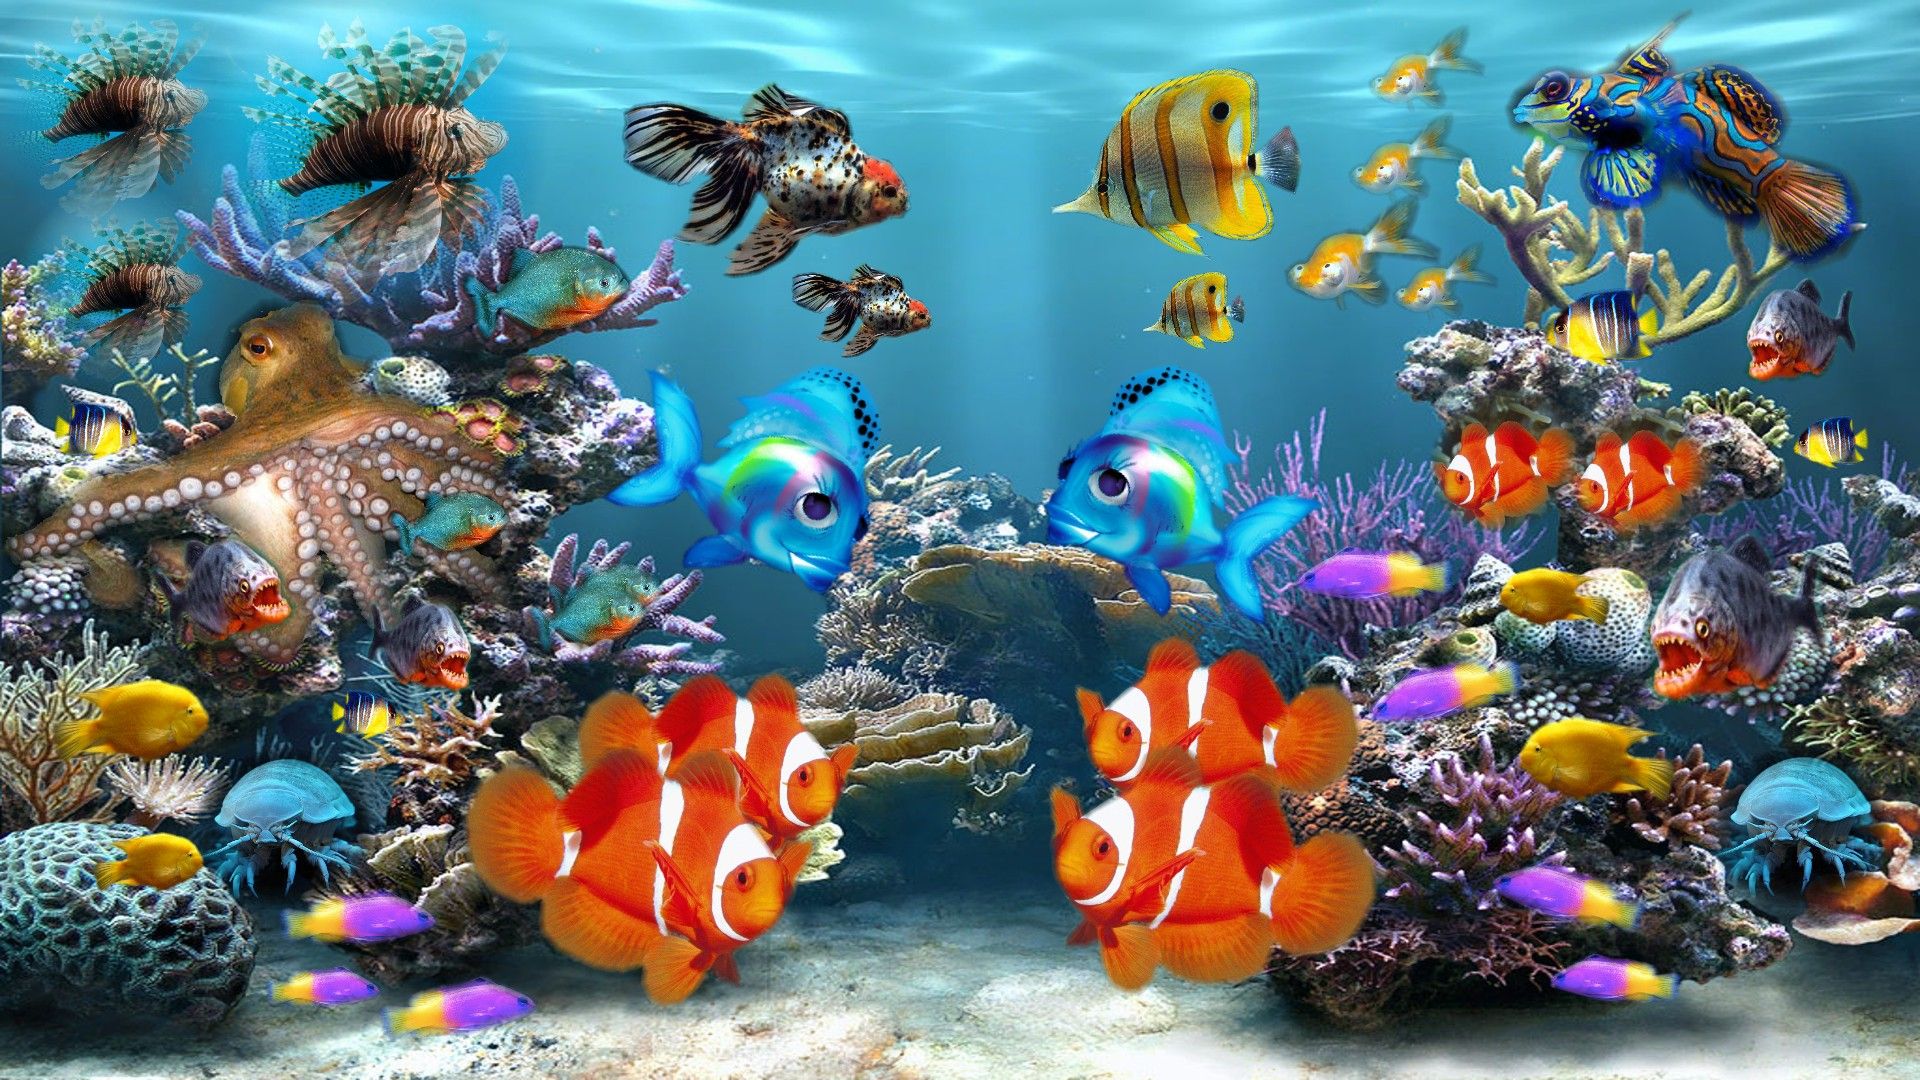 Bạn đang tìm kiếm một hình nền động bể cá với màu sắc đa dạng và tươi trẻ để làm mới giao diện của thiết bị của mình? Khám phá bộ sưu tập hình nền động bể cá độc đáo của chúng tôi. Với nhiều hình ảnh động đẹp mắt của một bể cá với các loài cá đầy màu sắc và sinh động, hình ảnh động của chúng tôi sẽ cho bạn trải nghiệm tràn đầy sáng tạo và tươi mới mỗi khi sử dụng máy tính của mình.